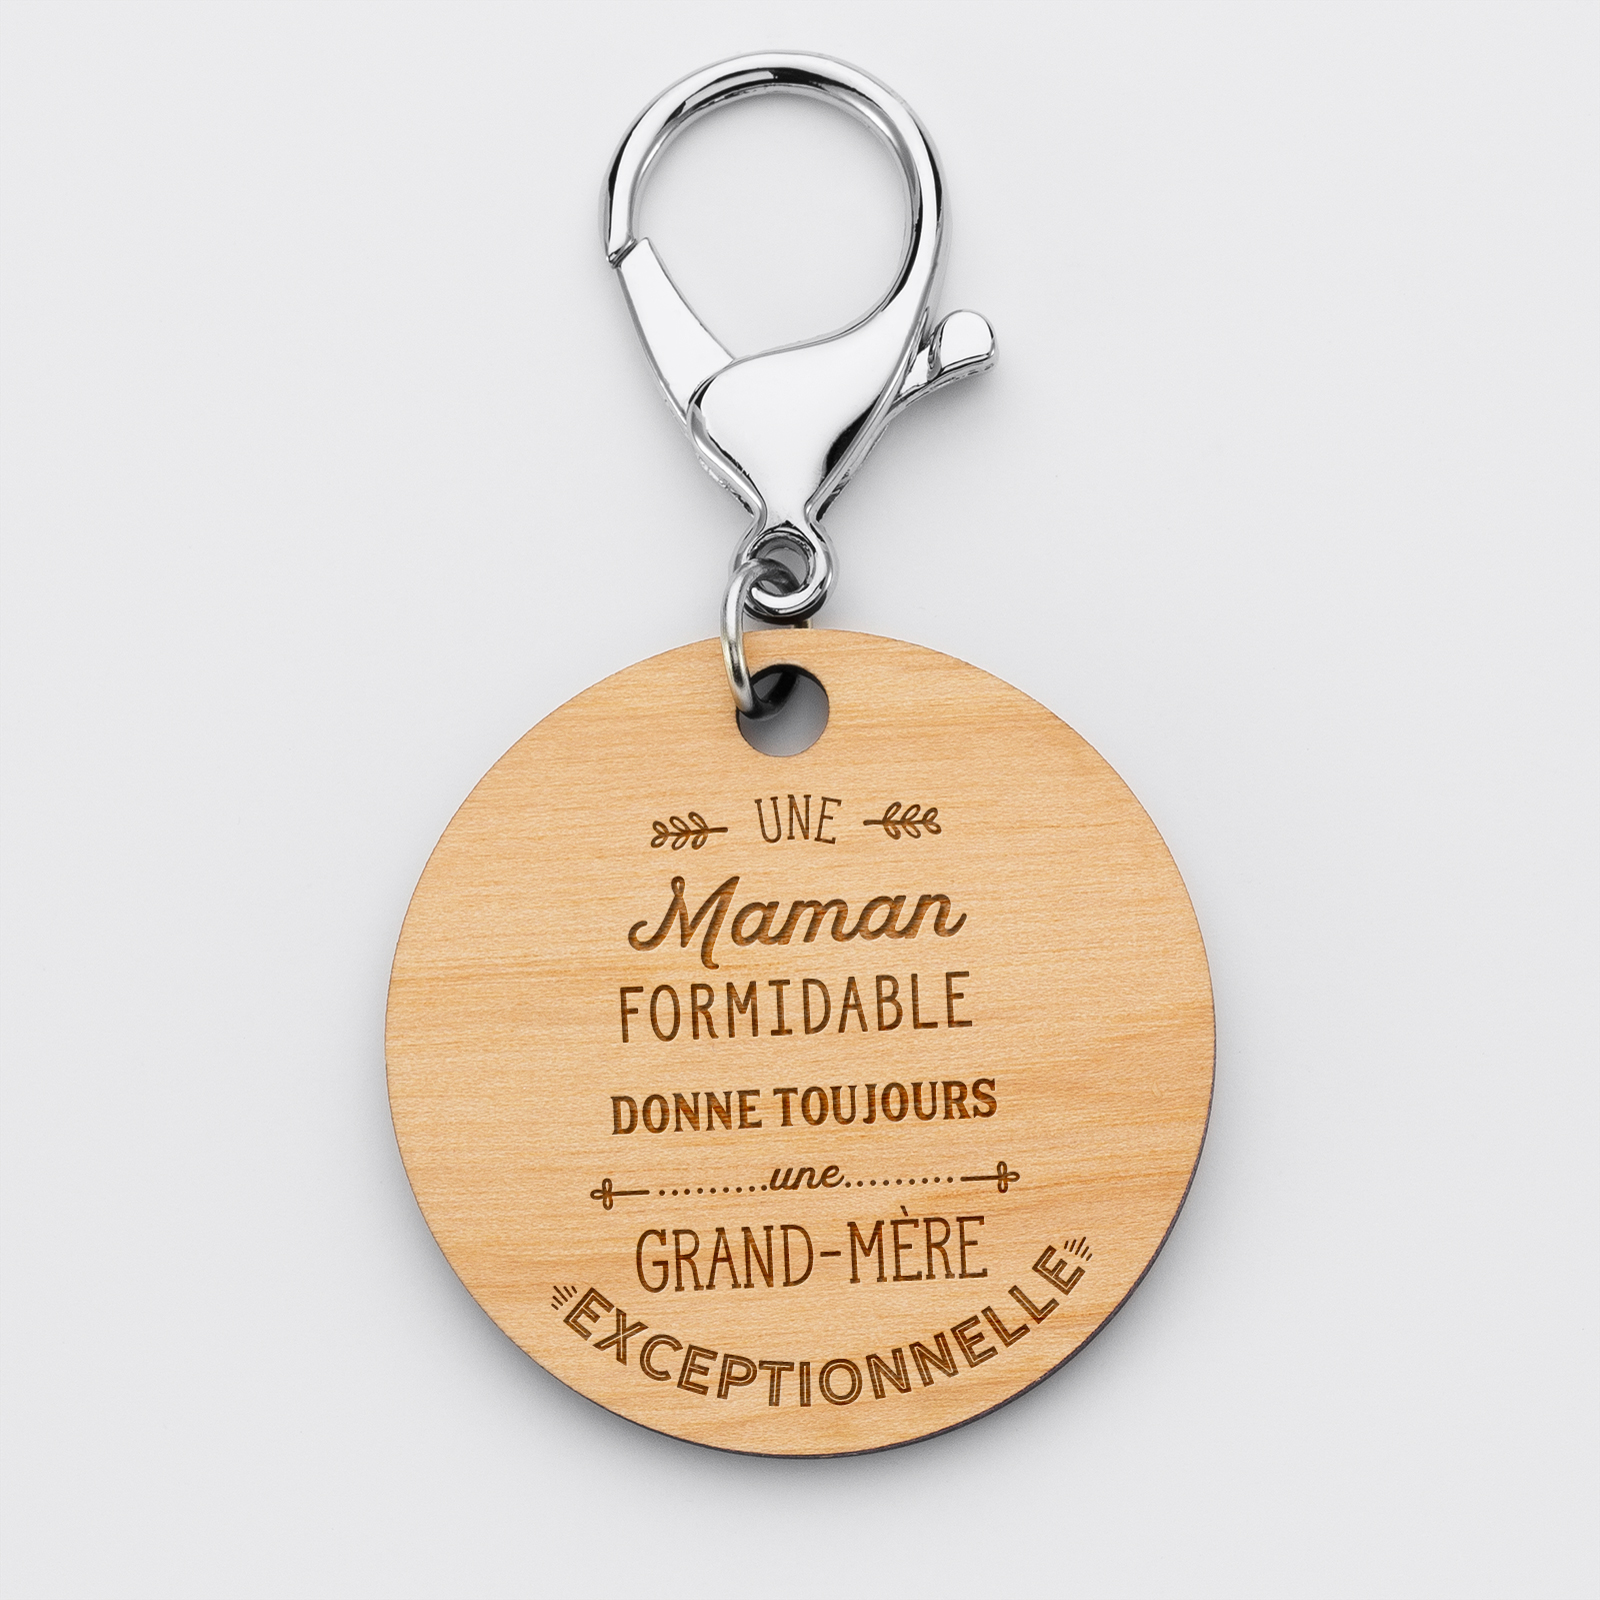 Porte-clés gravé bois médaille ronde 50 mm - Edition spéciale "Grand-mère Exeptionnelle" - recto